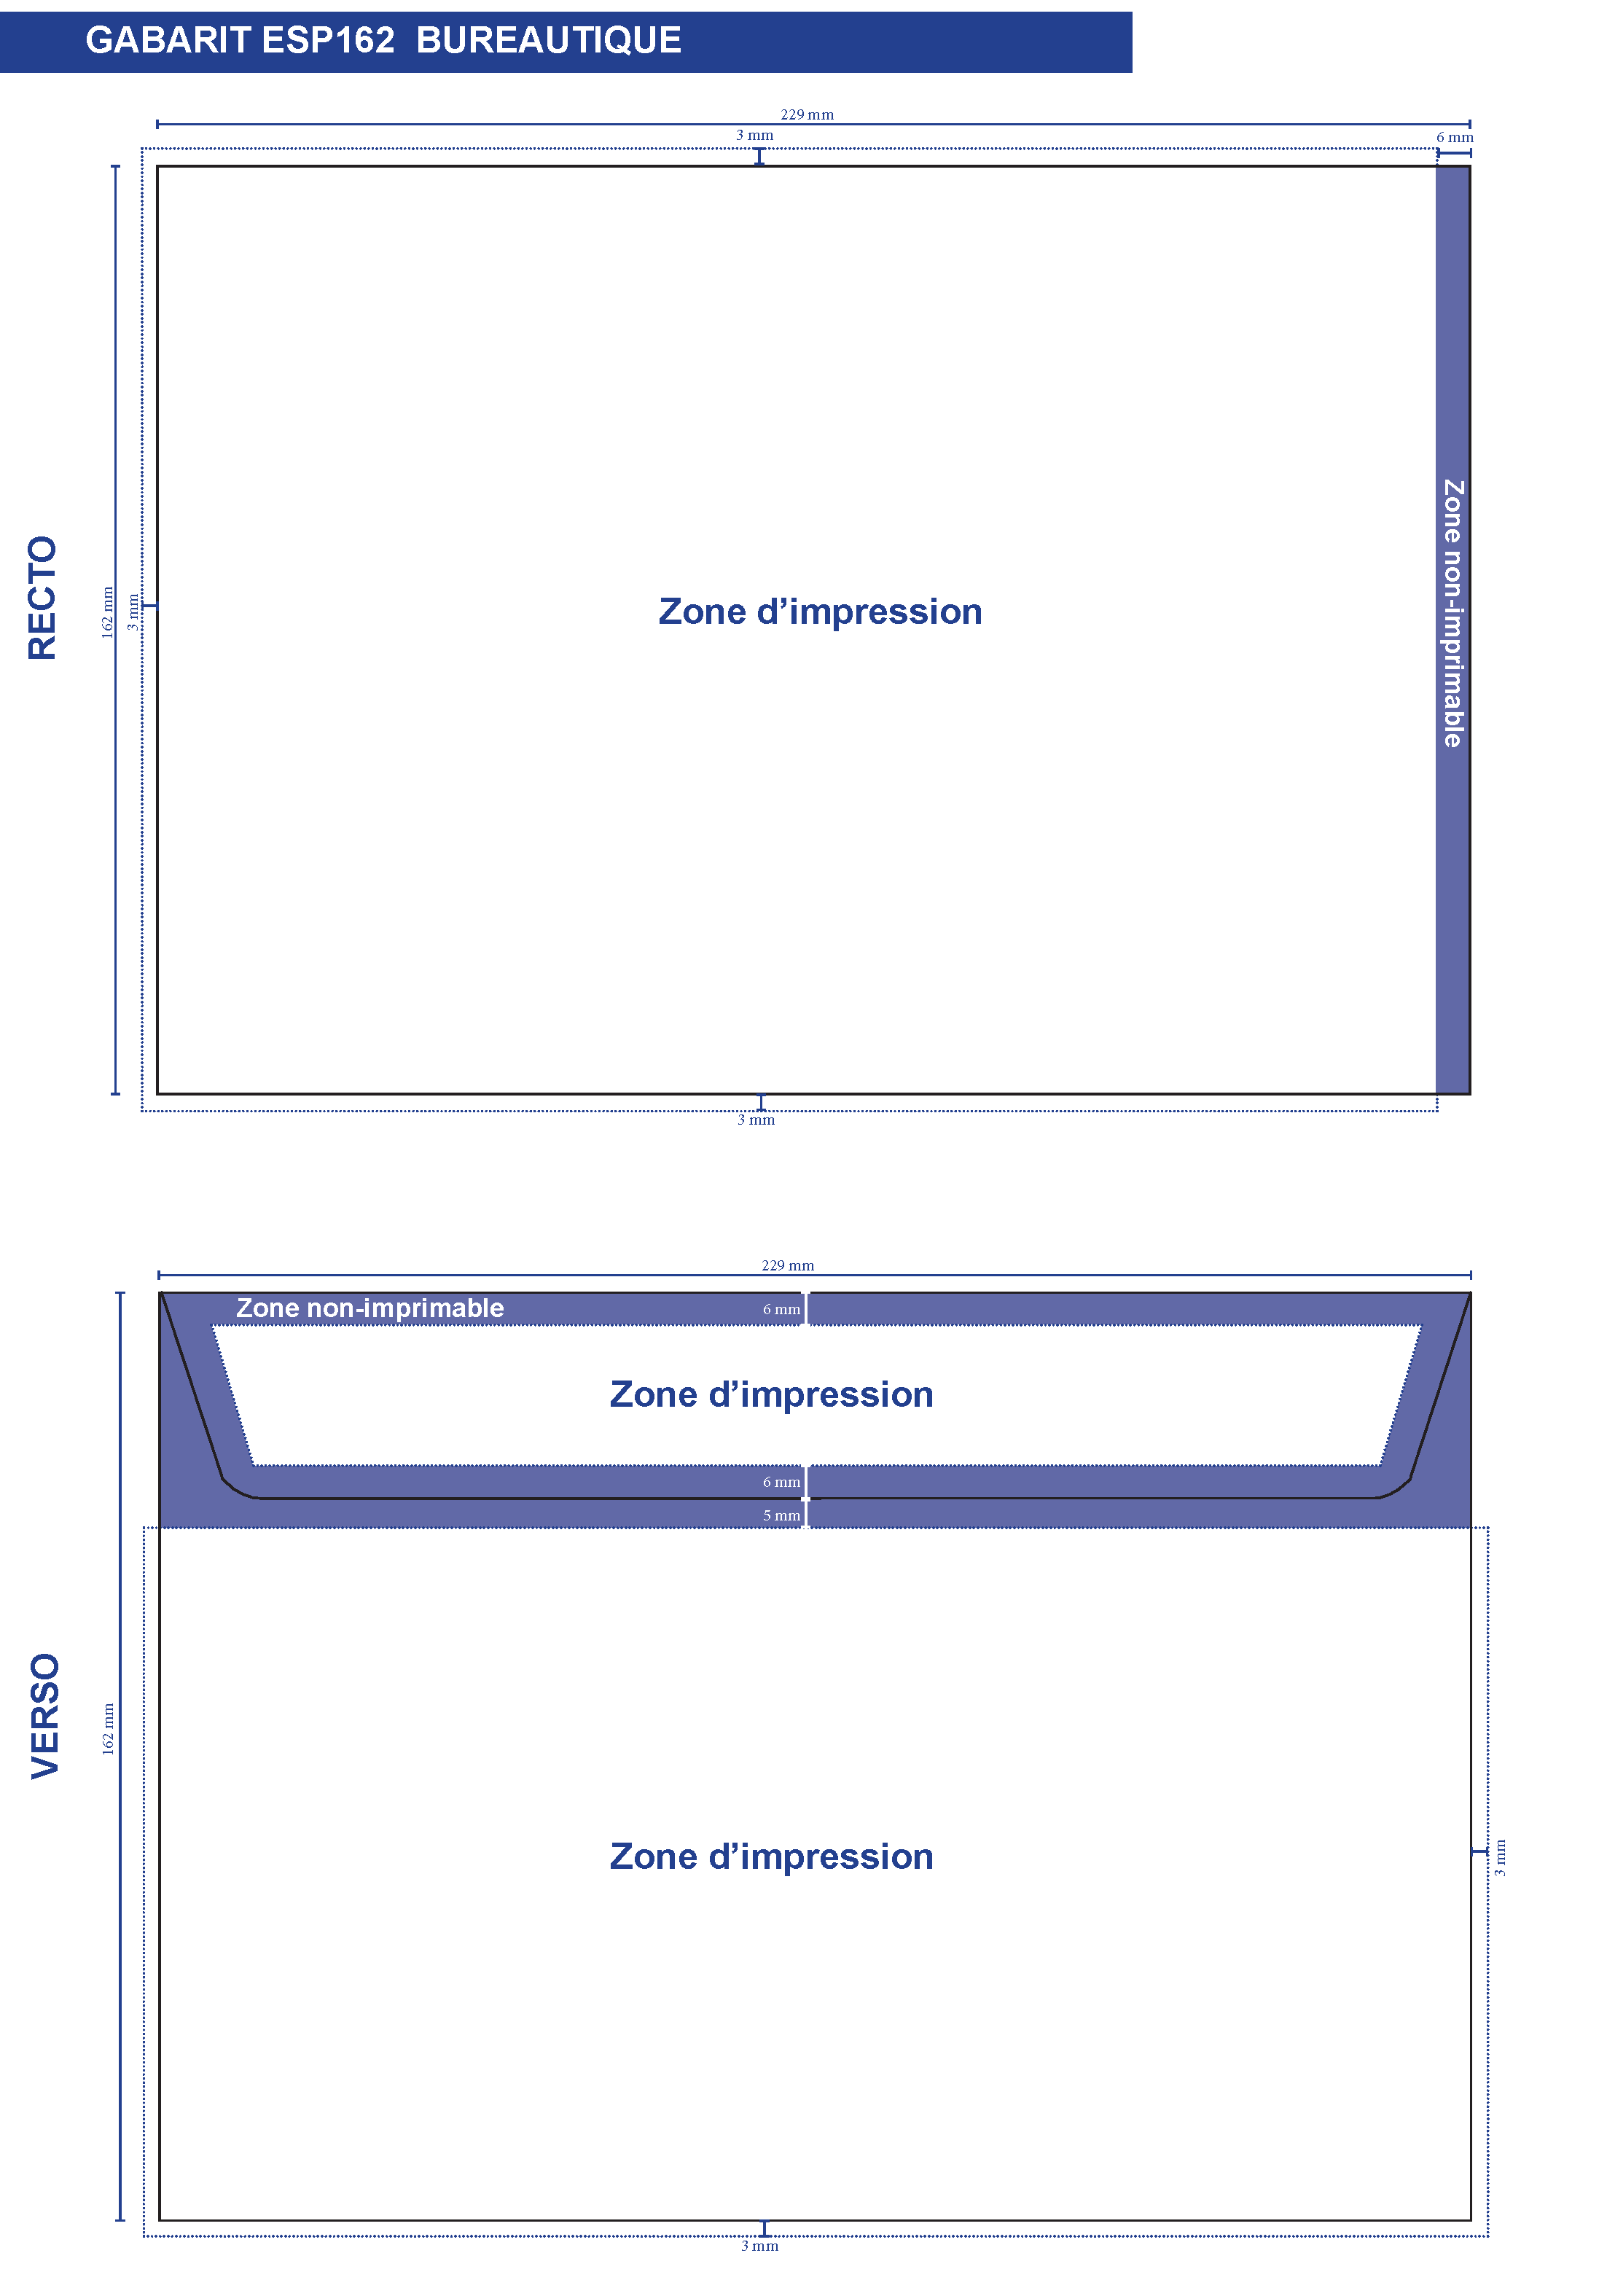 Enveloppe blanche La Couronne - format C5 - 229 x 162 mm - sans